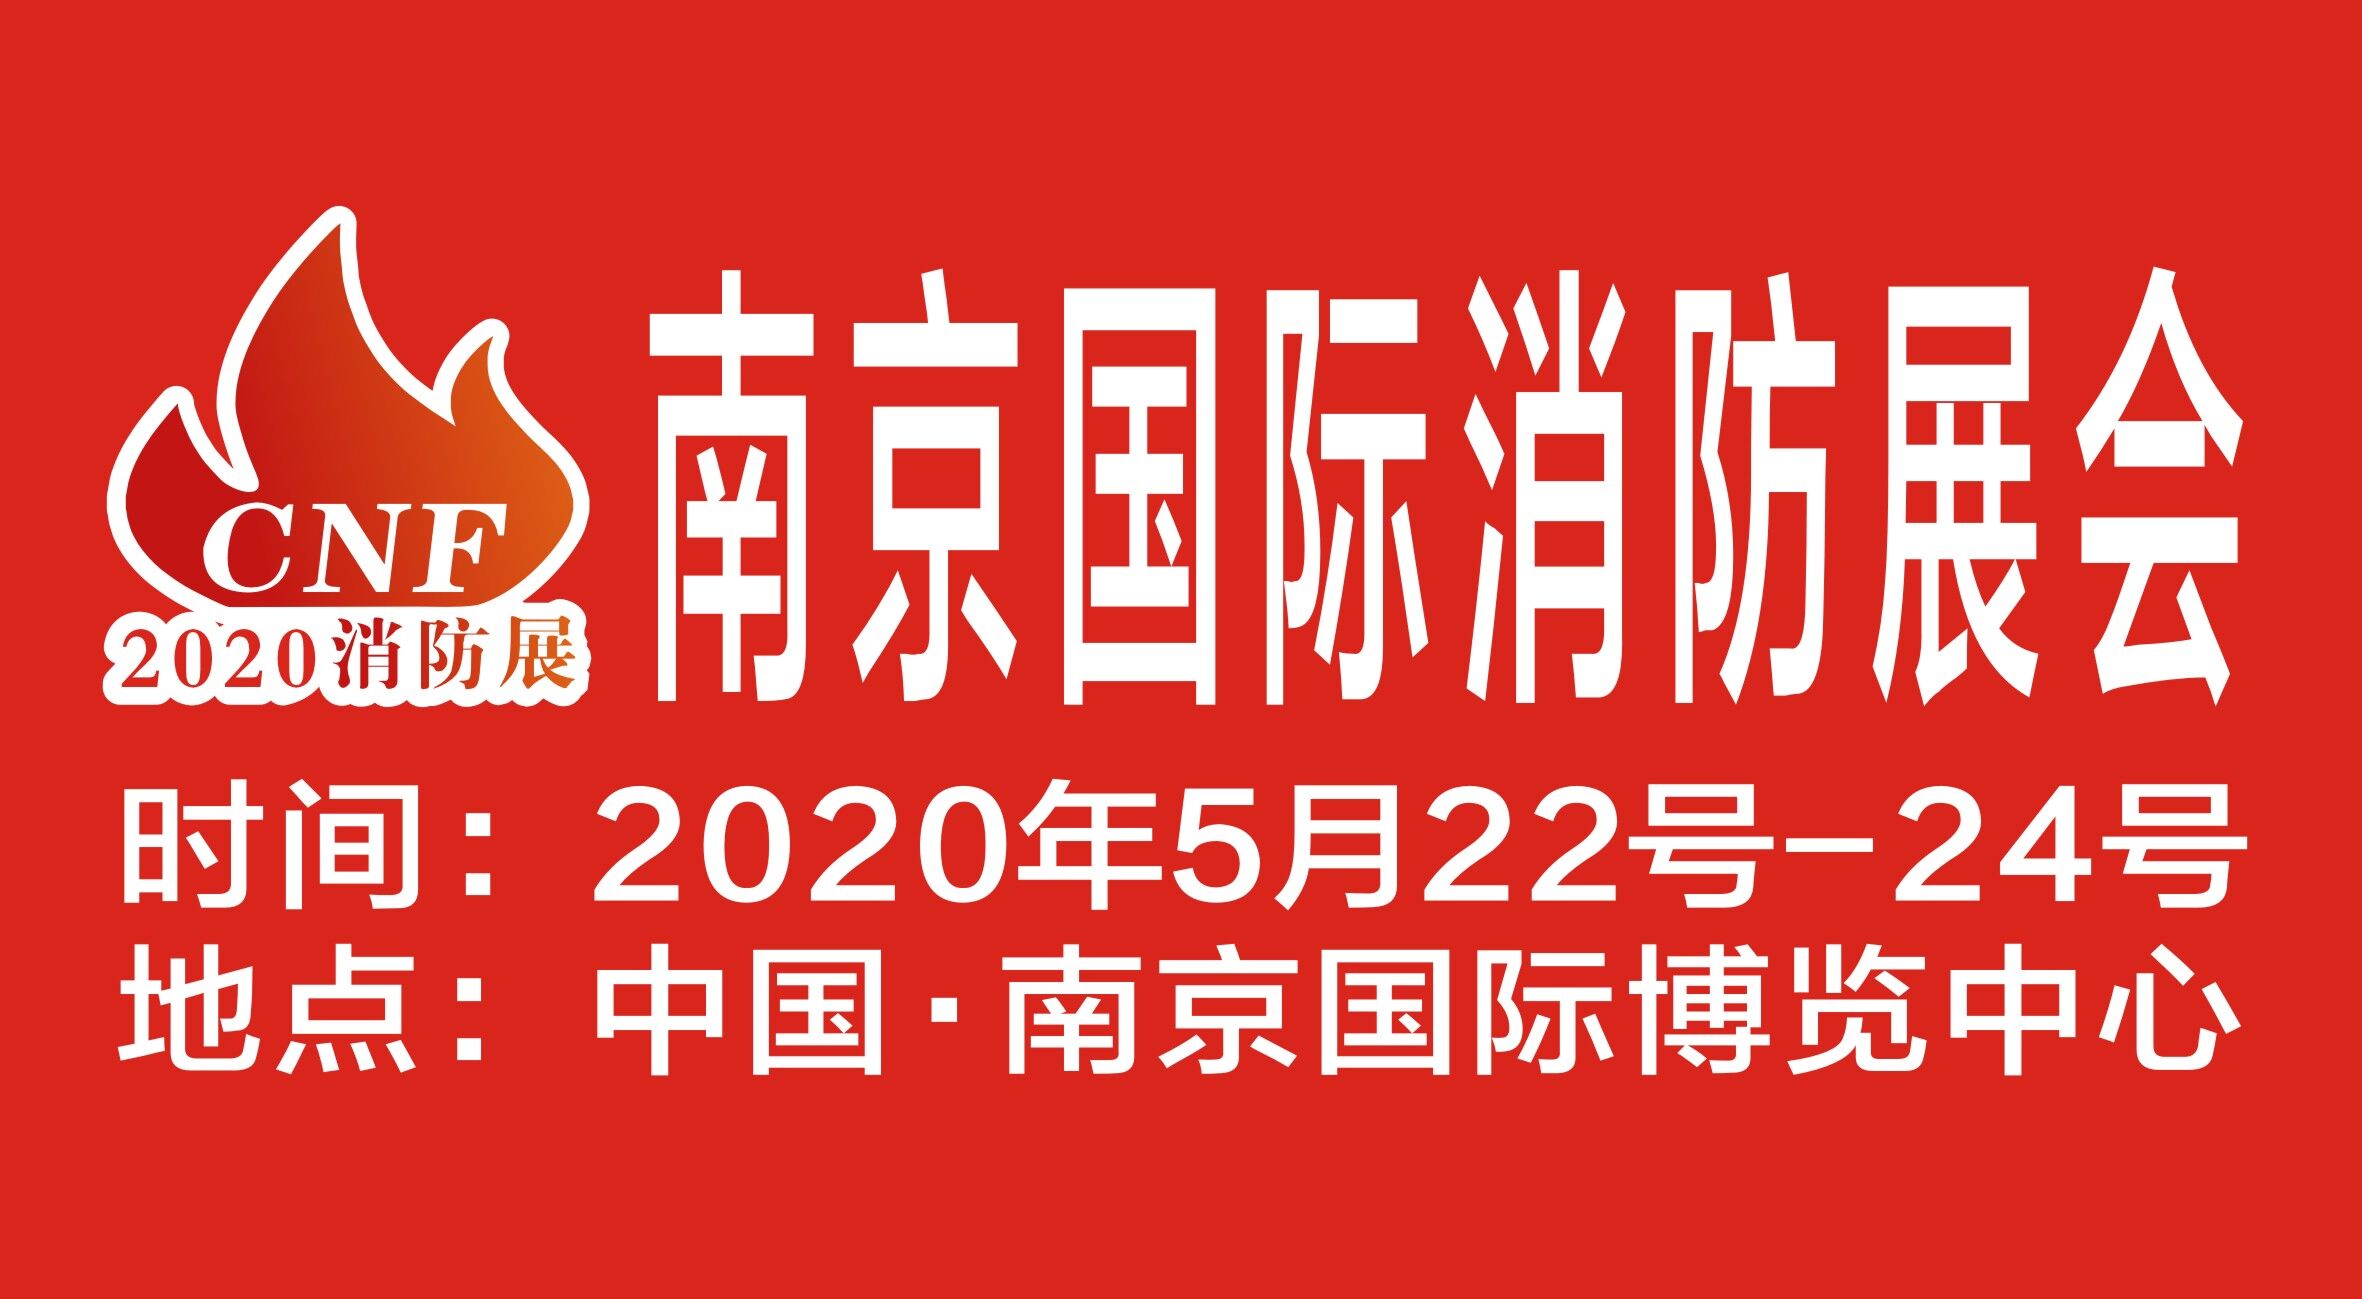 CNF南京国际消防展览会 | 亚之峰消防邀您参加5月22-24日